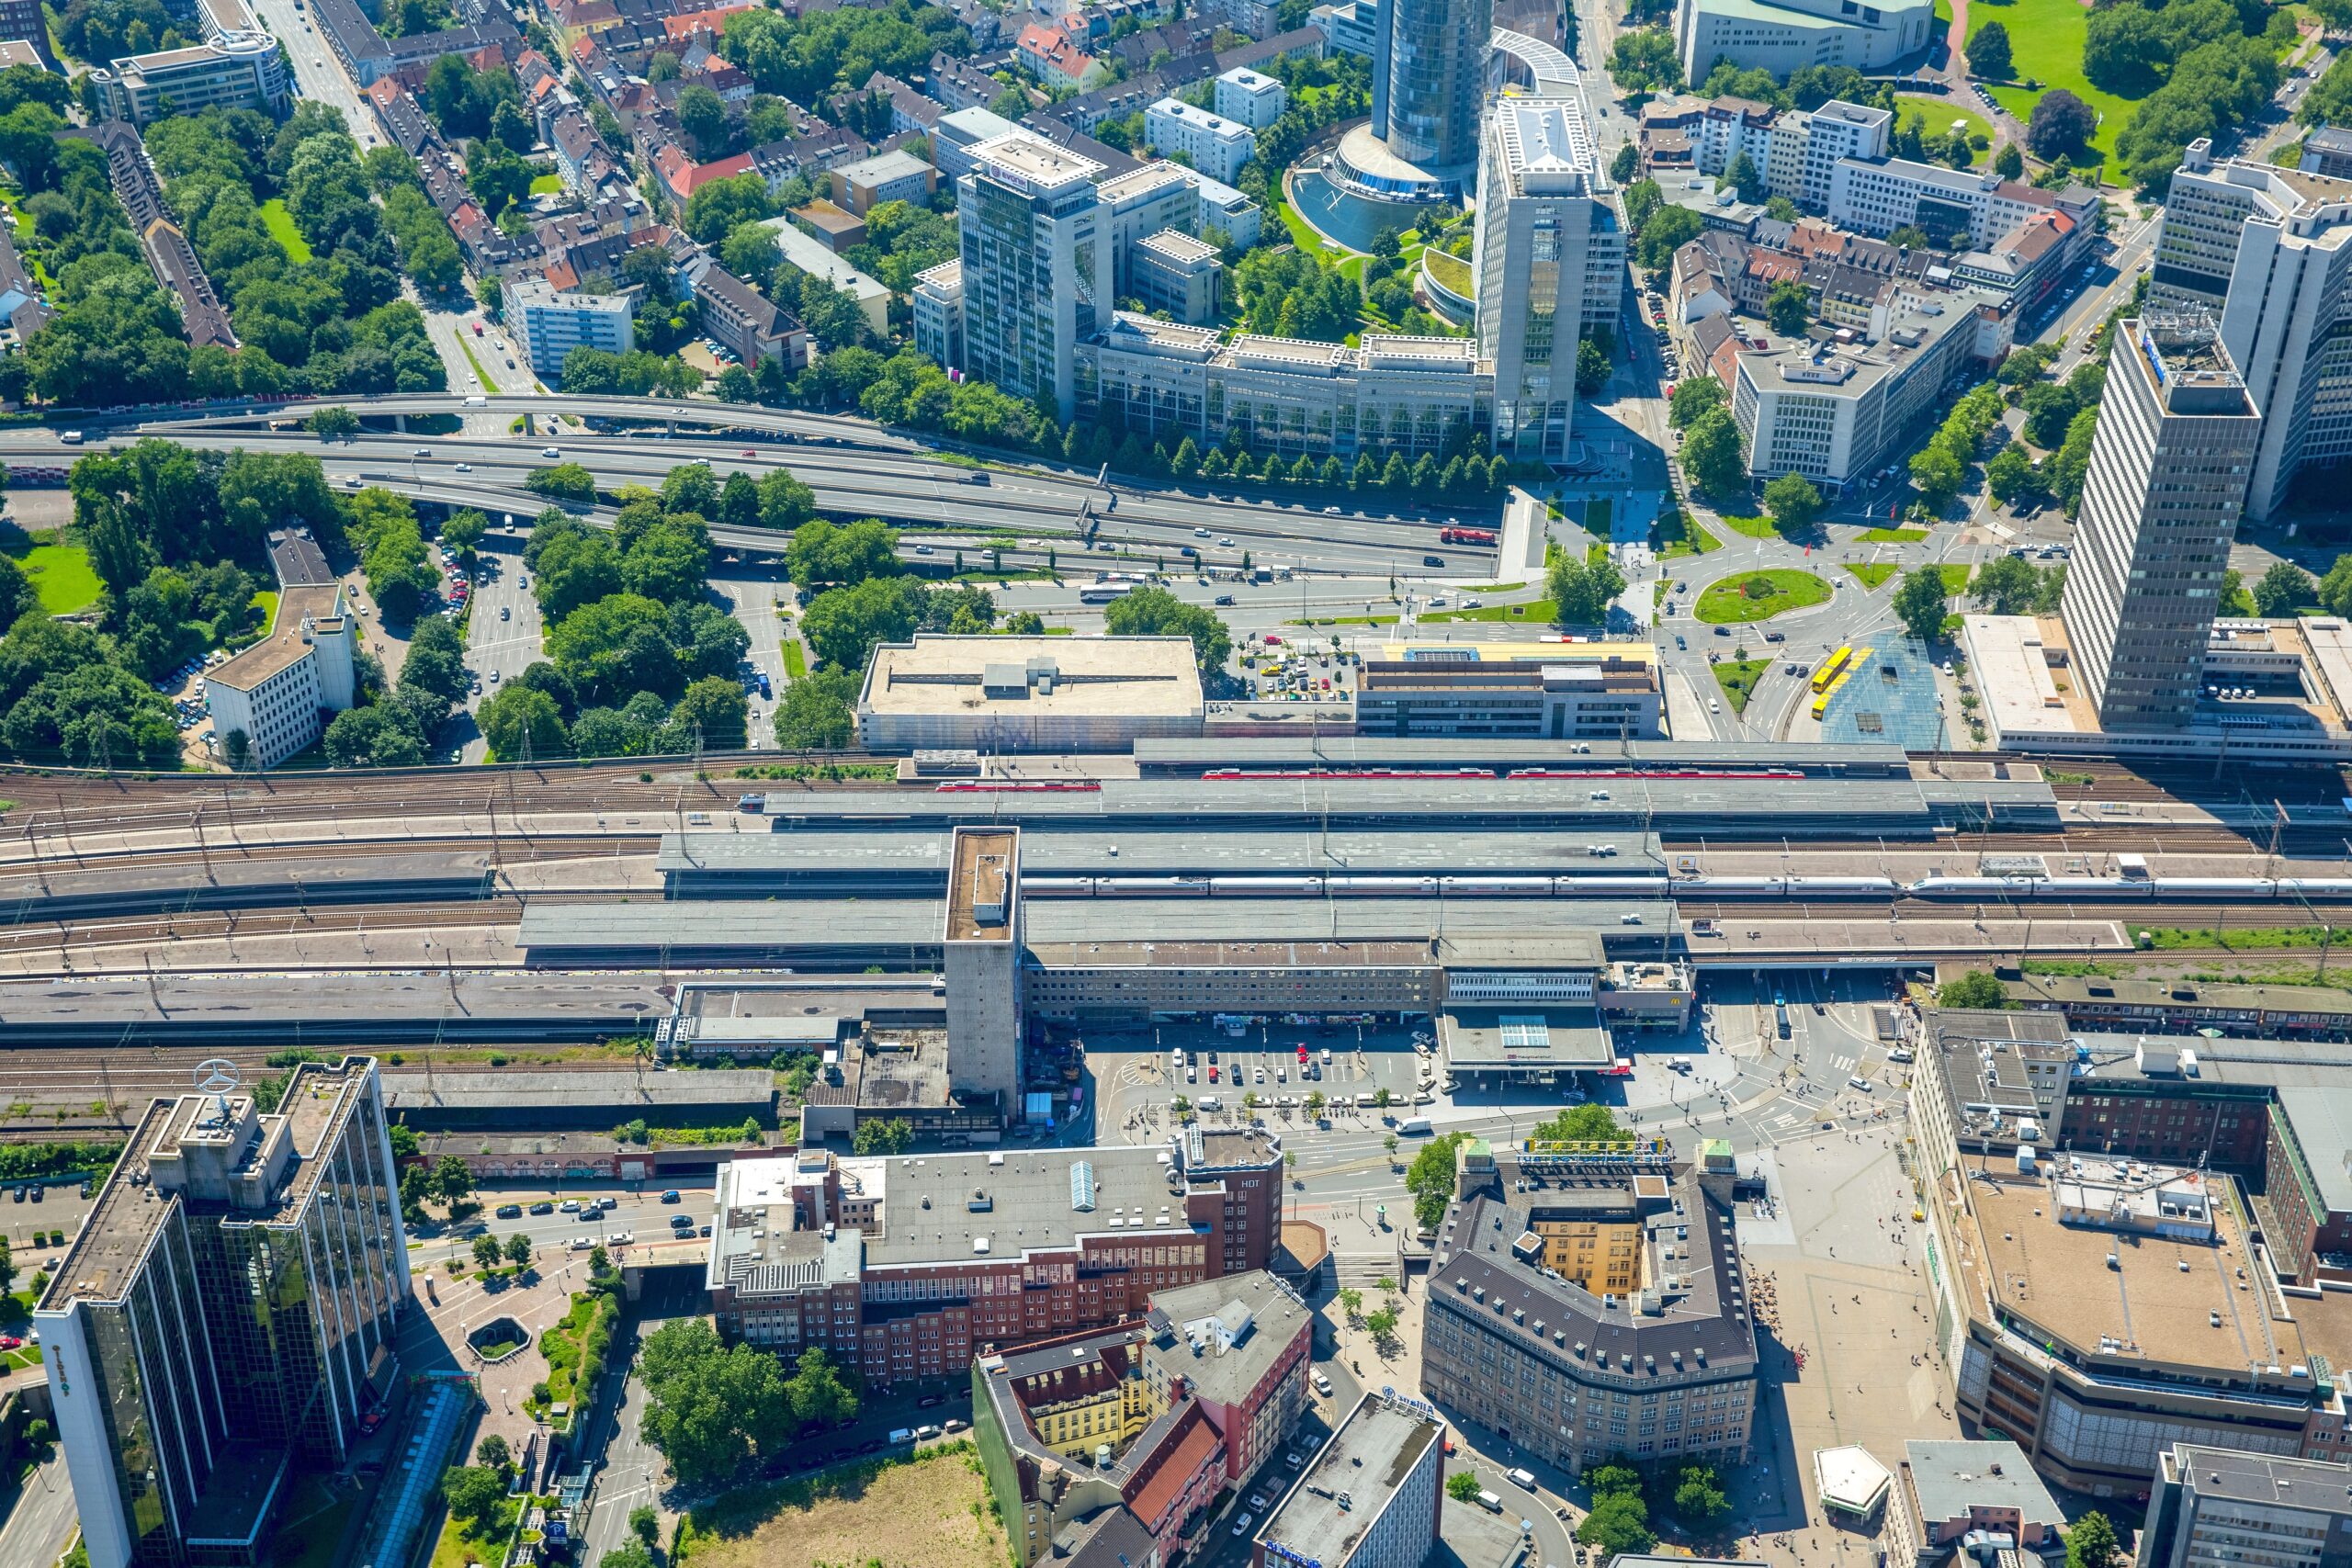 Der Hauptbahnhof mit Gildehof-Center (links unten), Handelshof und Willy-Brandt-Platz (vorne) sowie Postbank-Hochhaus (rechts) und Evonik-Zentrale.